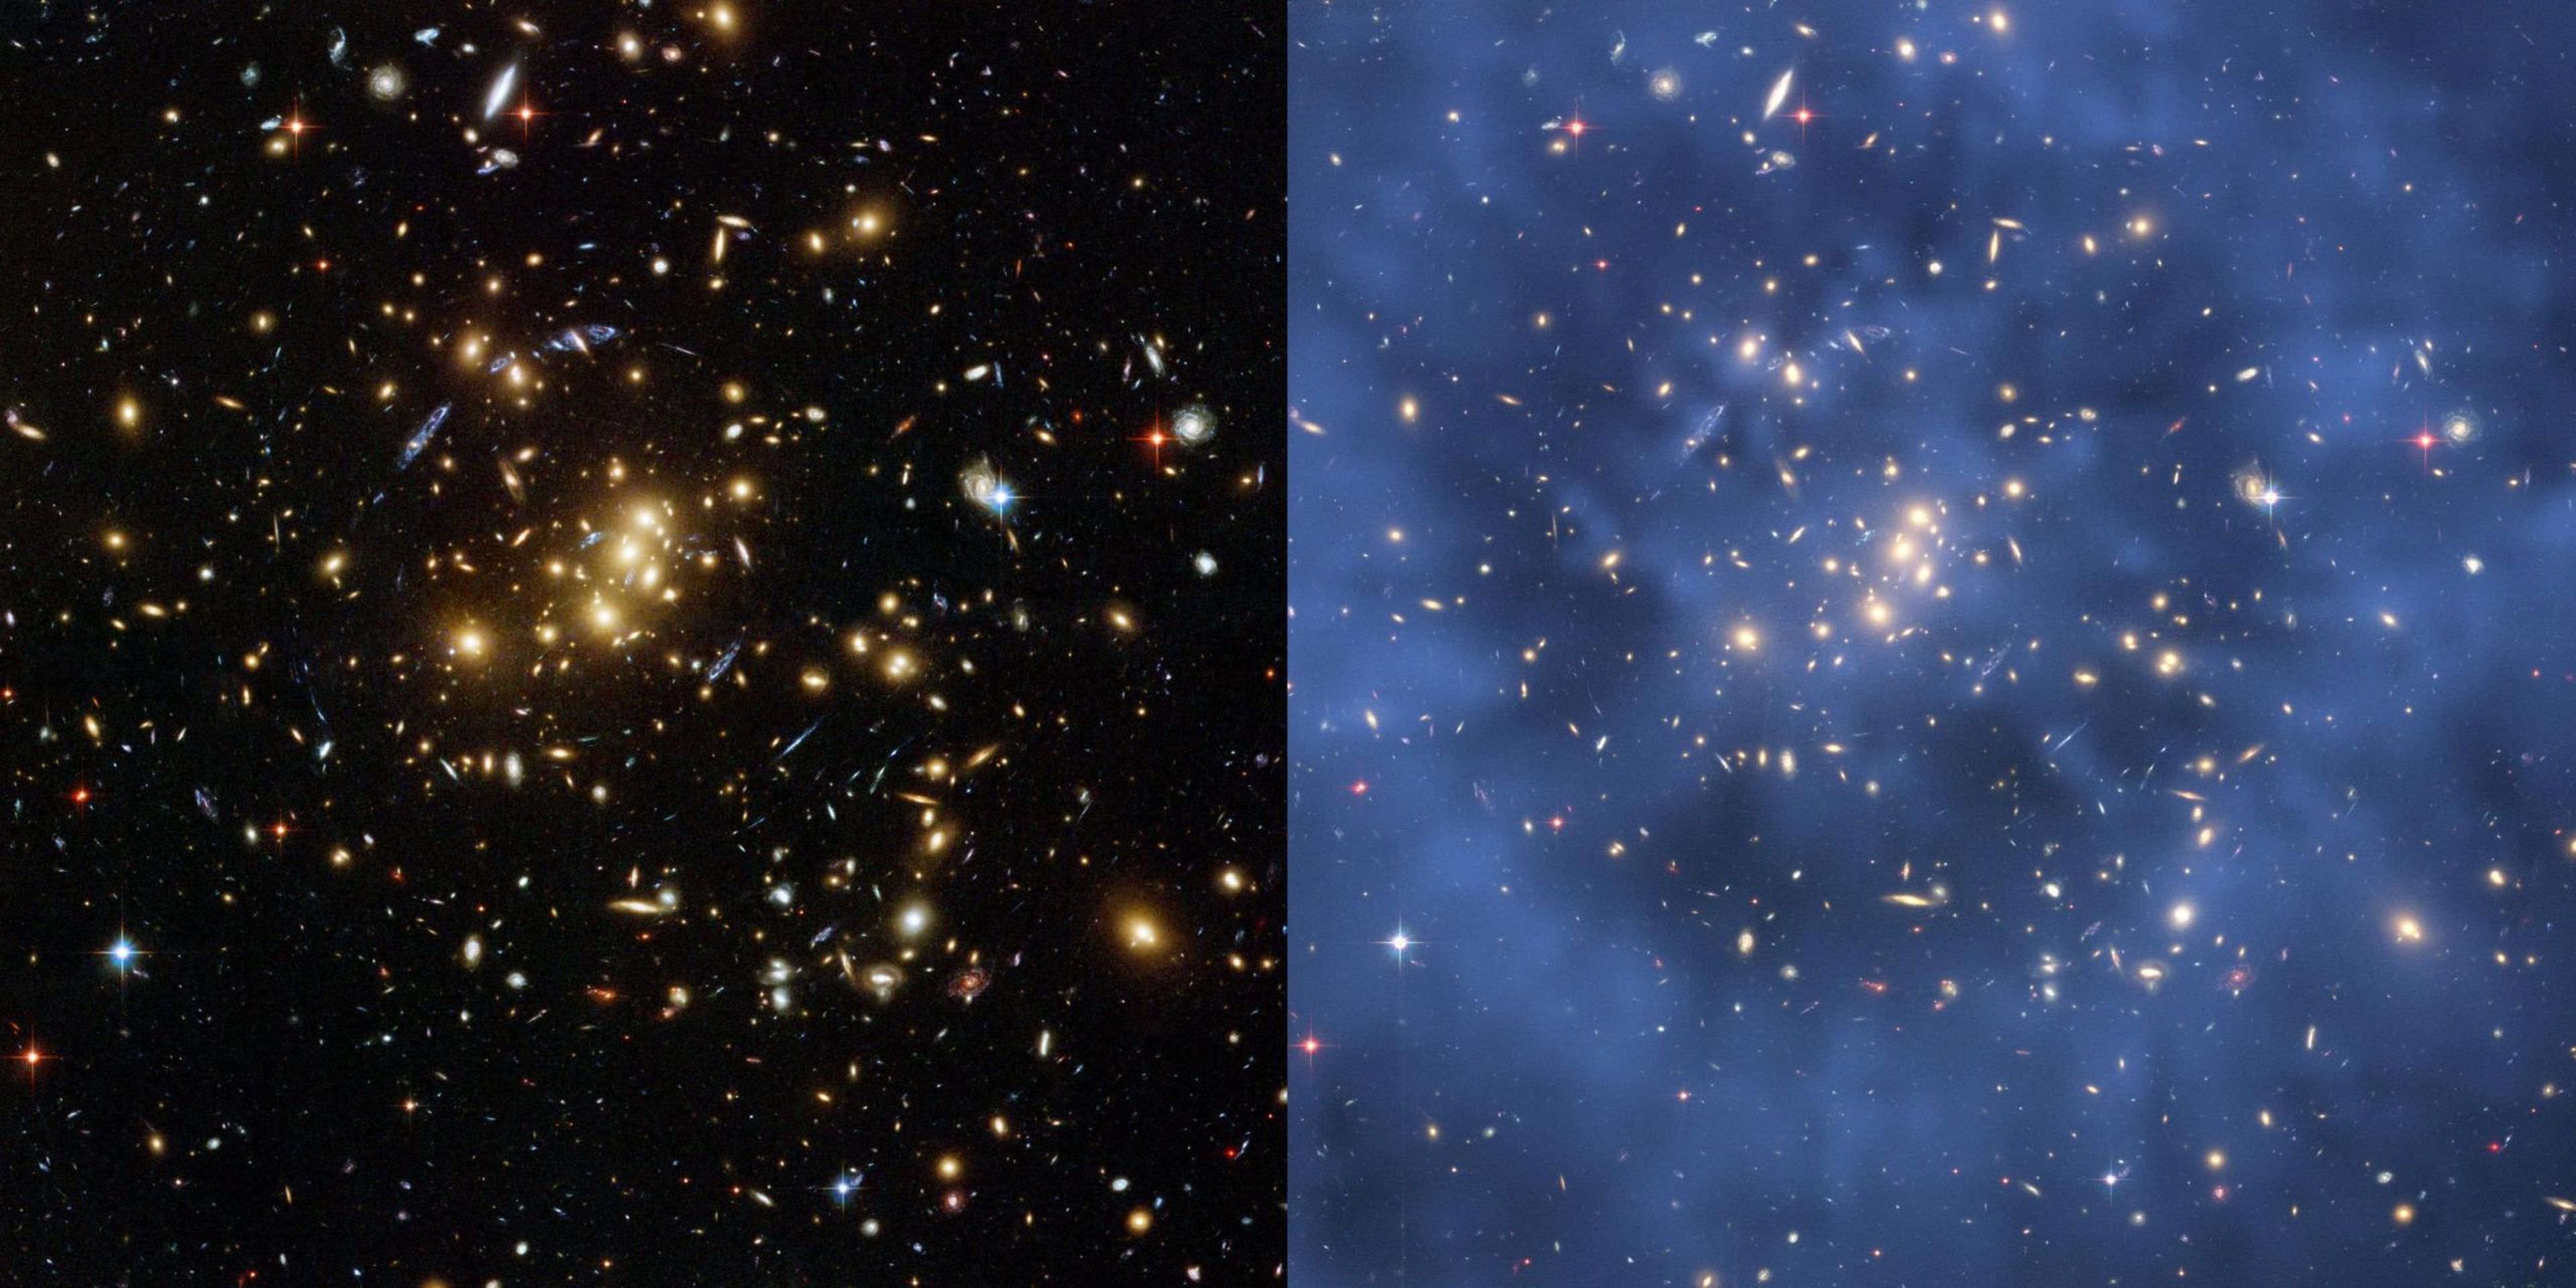 Imágenes del Hubble del cúmulo de galaxias masivas Cl 0024+17.